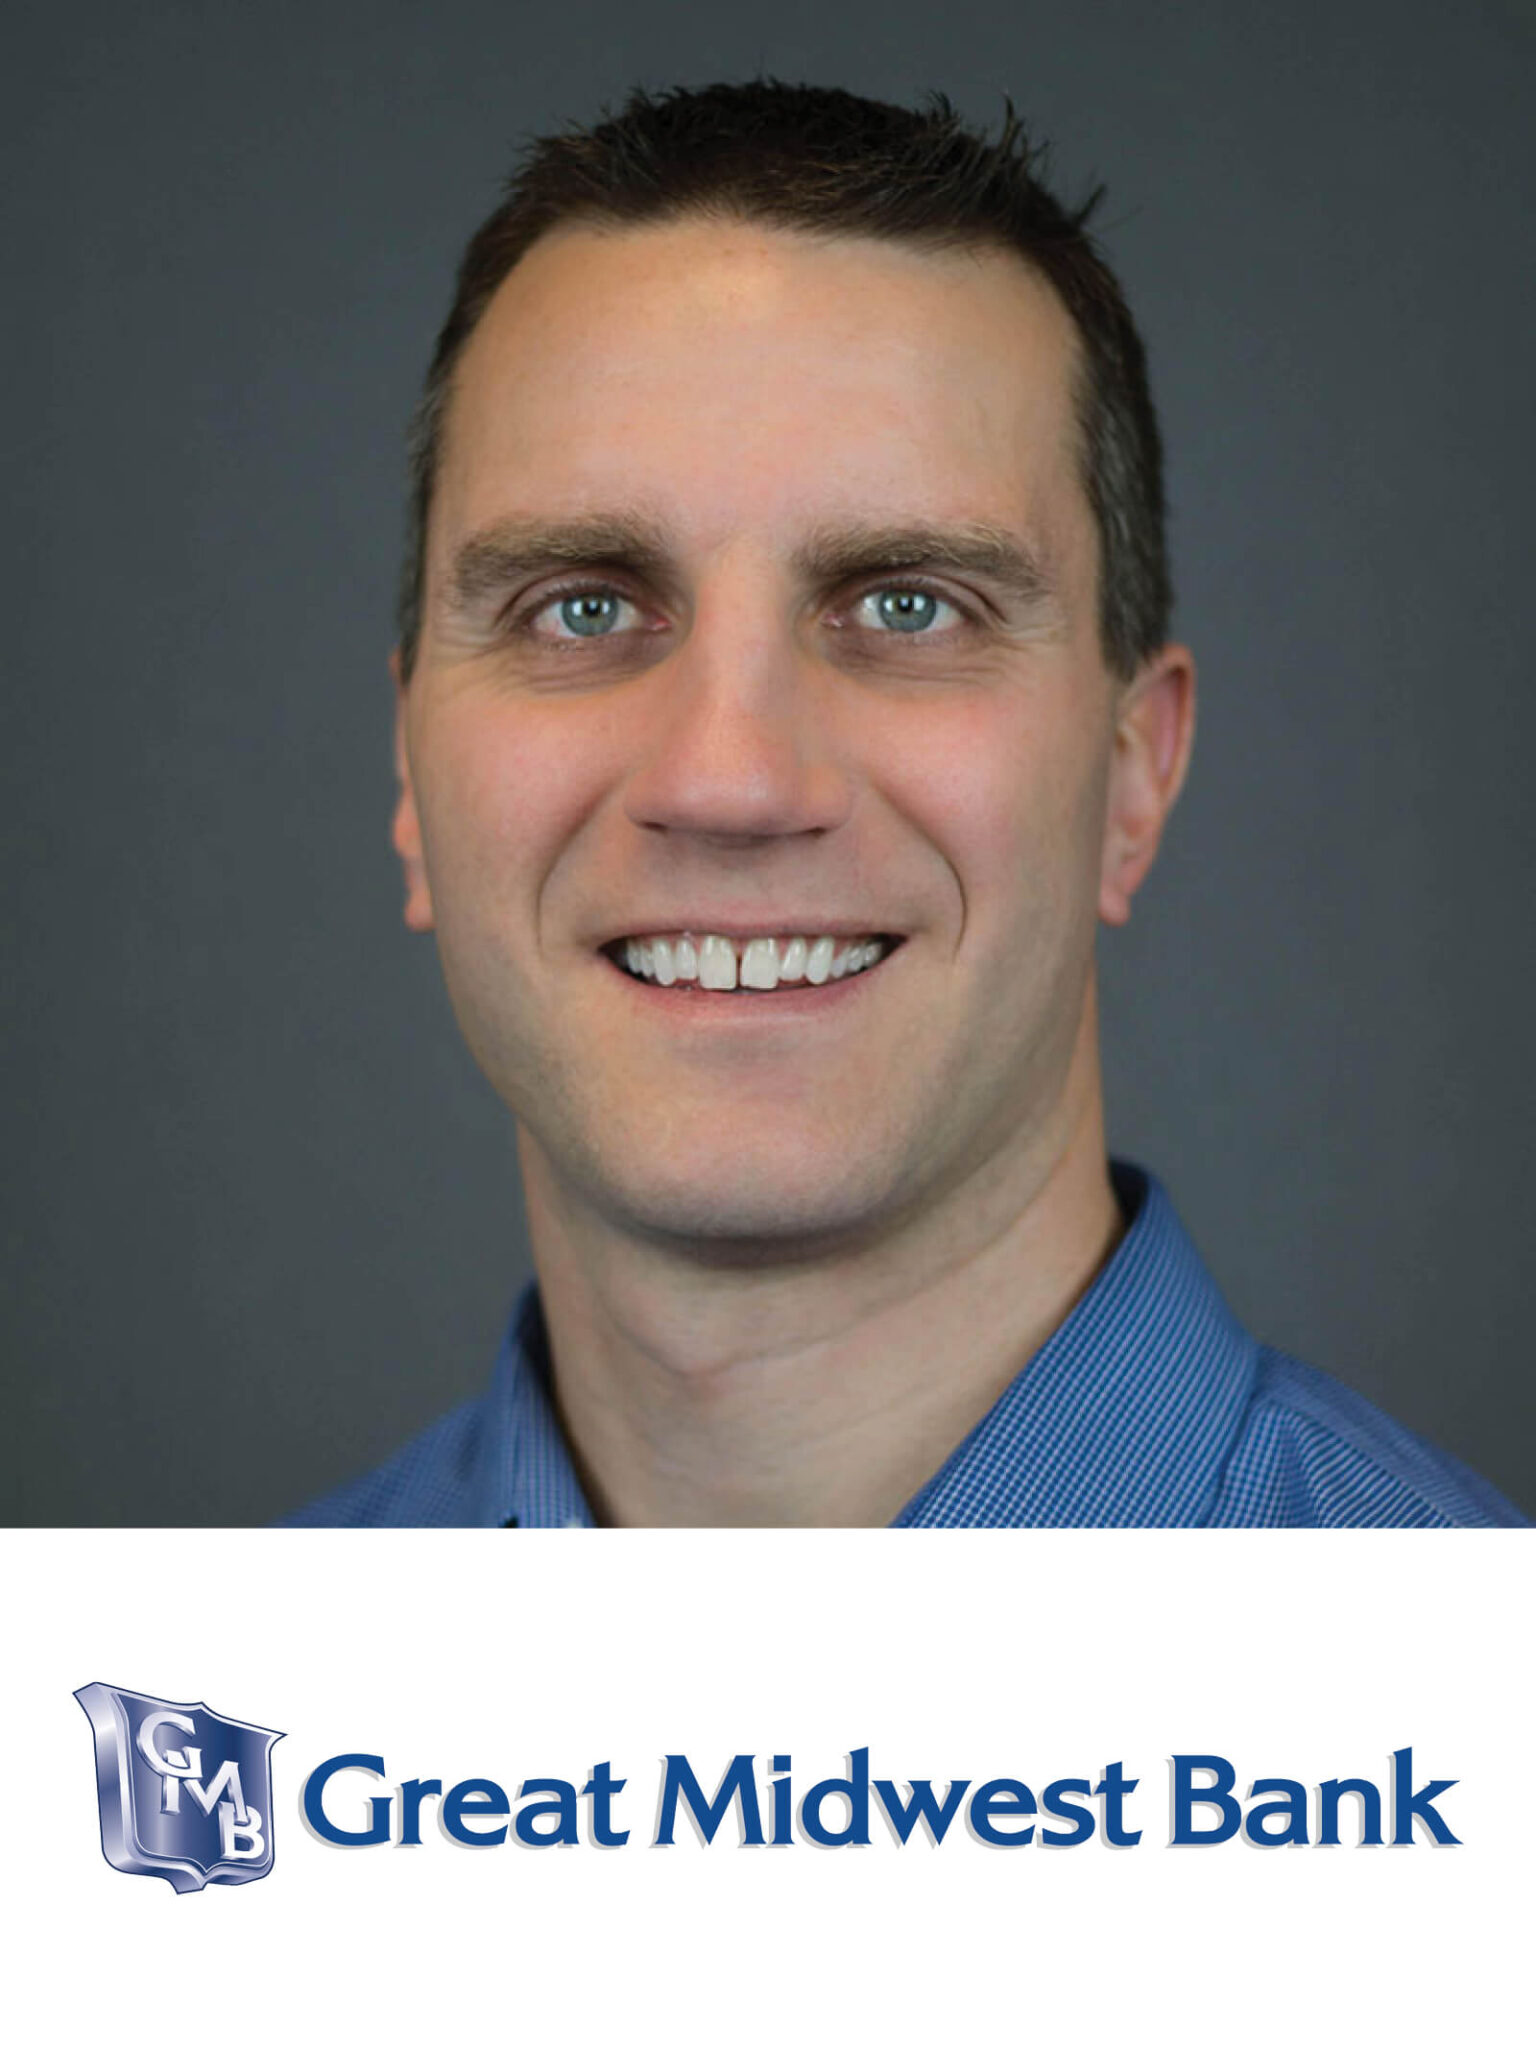 Matt Gaulke, Great Midwest Bank